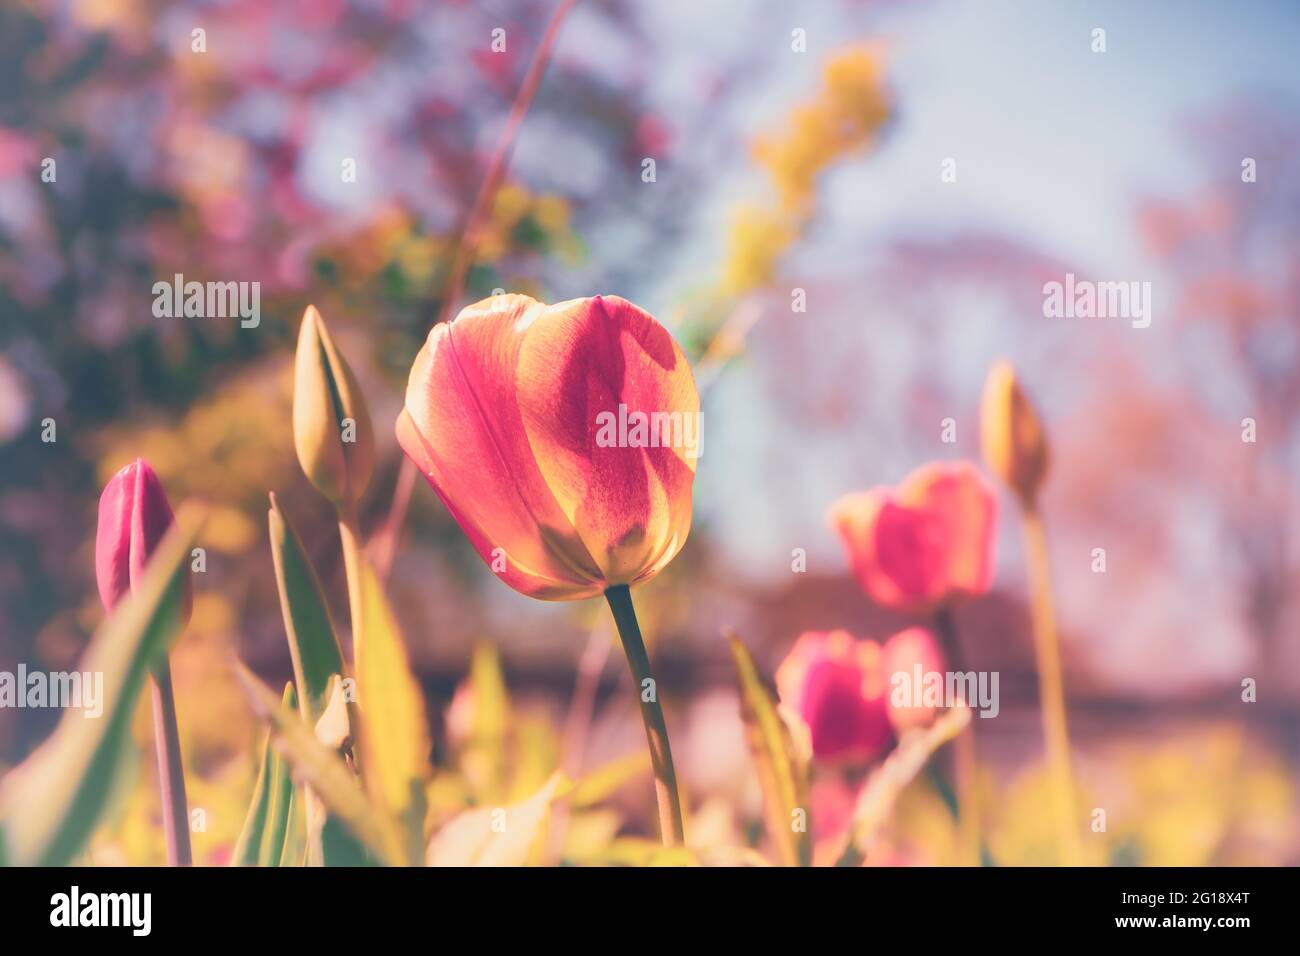 Stimmungsvolles, farbenfrohes Blumenmeer aus Tulpen im Grugapark Essen mit Blüten im Licht und Sonnenschein im Park - Ein Hauch von Emotionen. Stock Photo